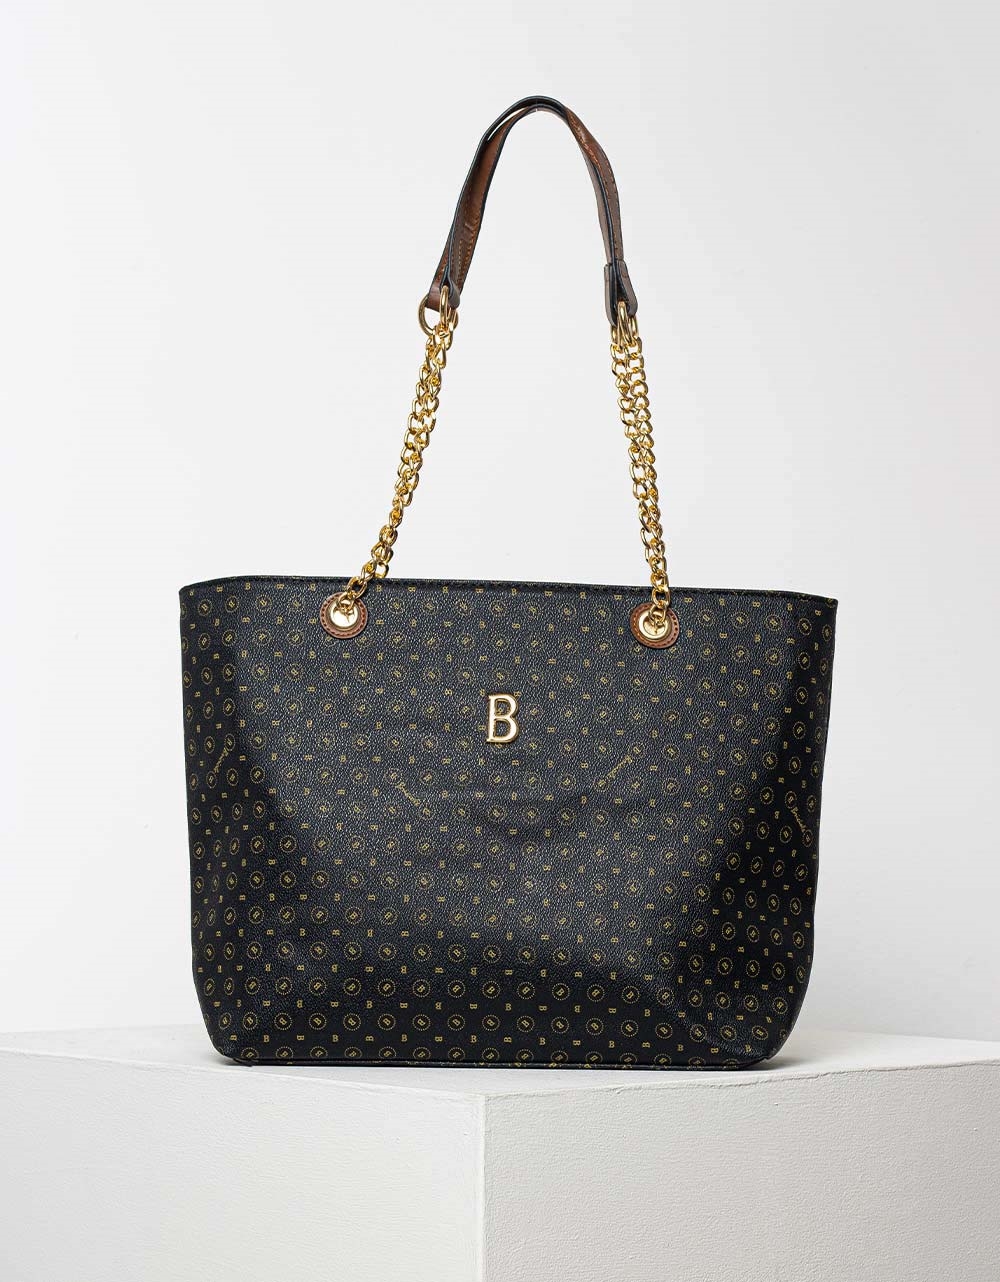 Εικόνα από Γυναικεία τσάντα χειρός με pattern γραμμάτων και χρυσές λεπτομέρειες Μαύρο